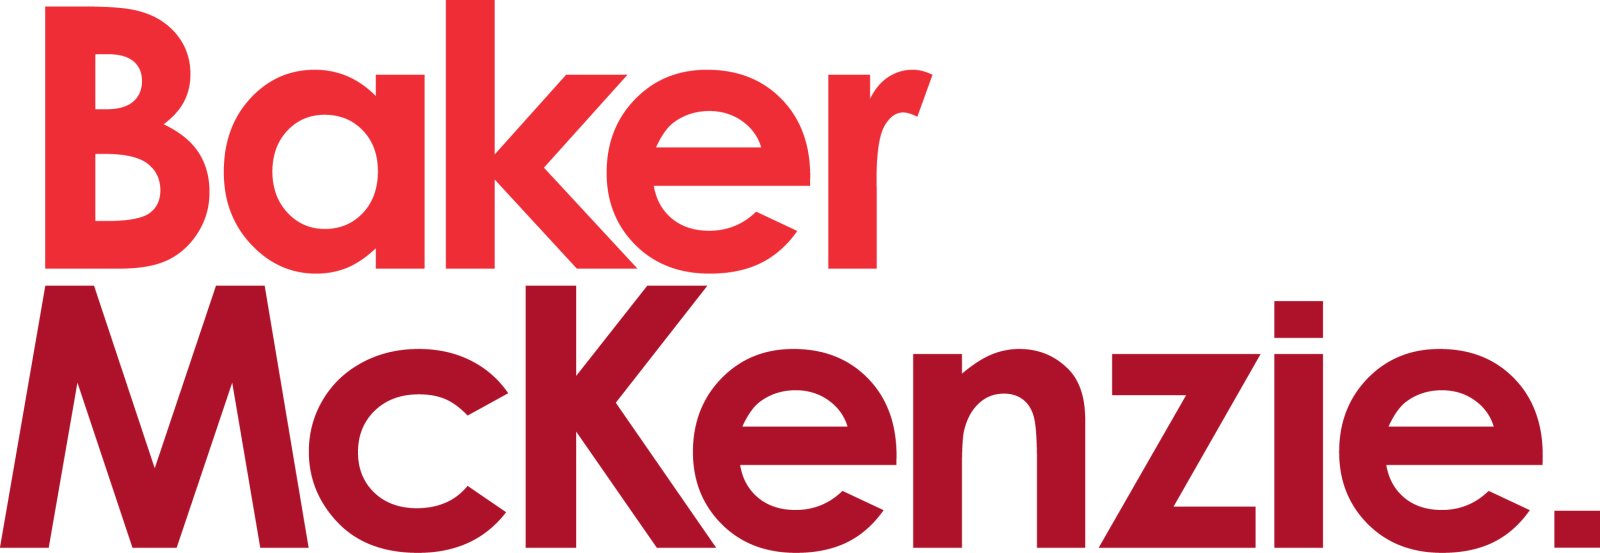 Logo Baker McKenzie.